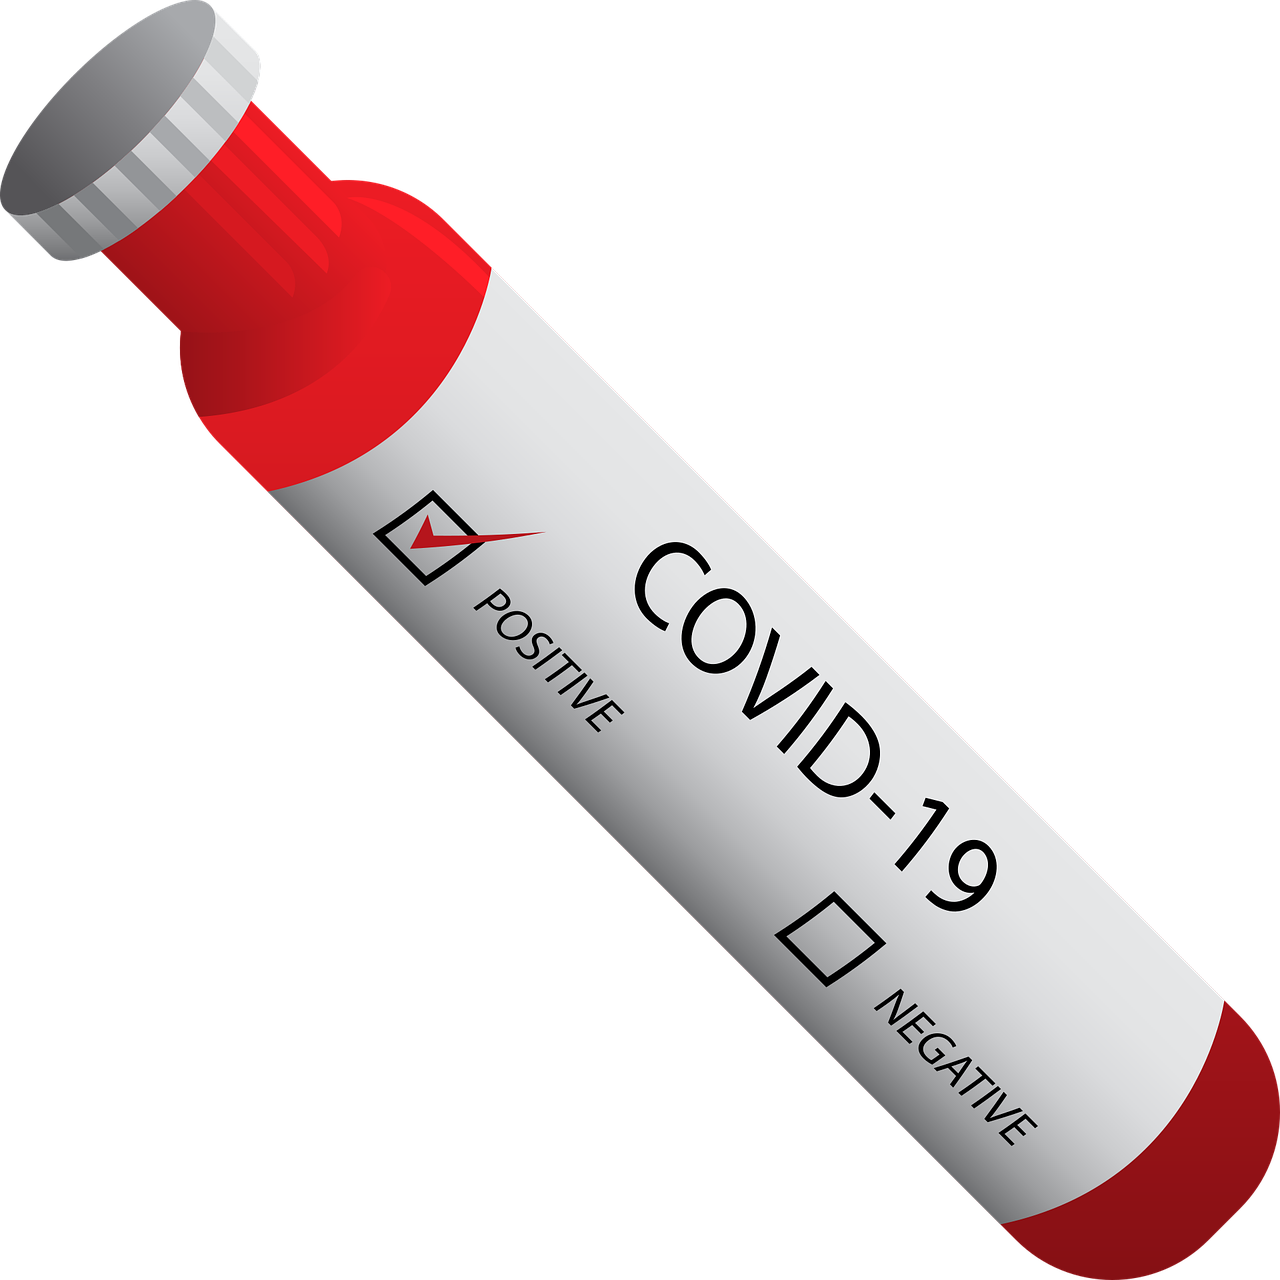 Novo coronavírus, COVID-19 positivo